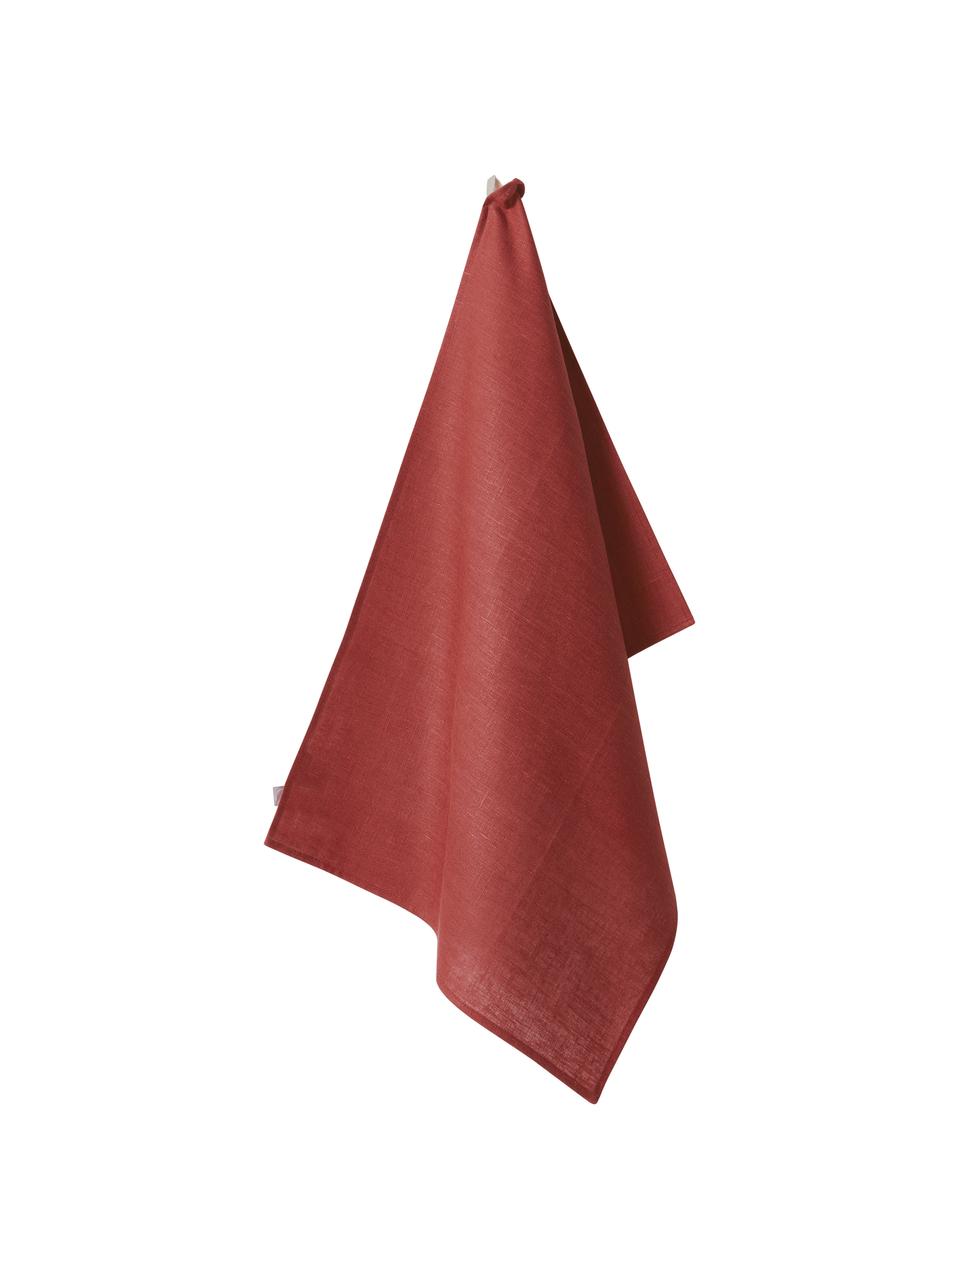 Leinen-Geschirrtuch Heddie in Rot, 100% Leinen, Rot, 50 x 70 cm